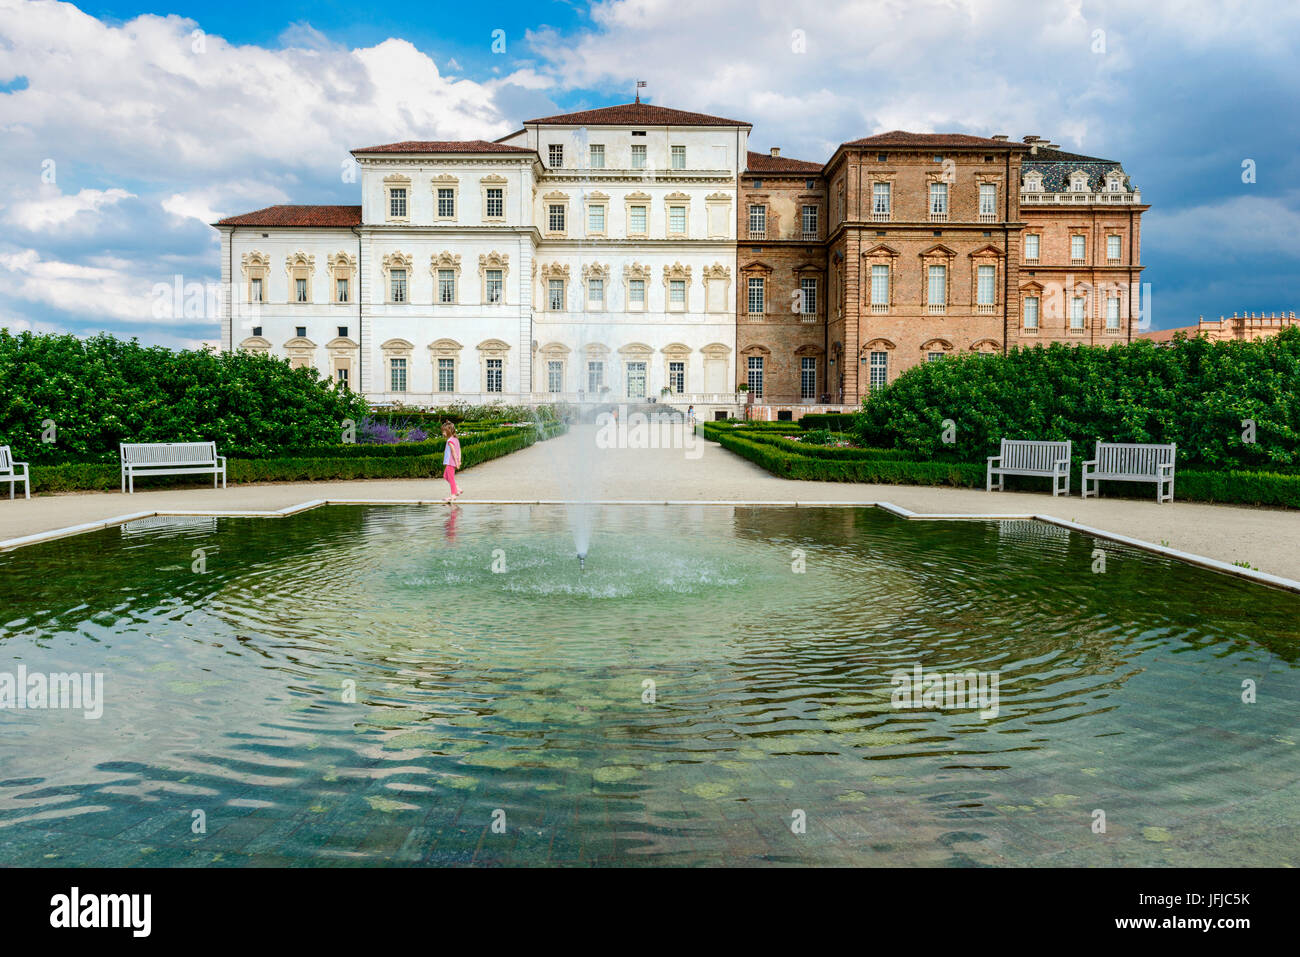 Palast von Venaria, Wohnsitze des königlichen Hauses Savoyen, Provinz Turin, Piemont, Italien Stockfoto